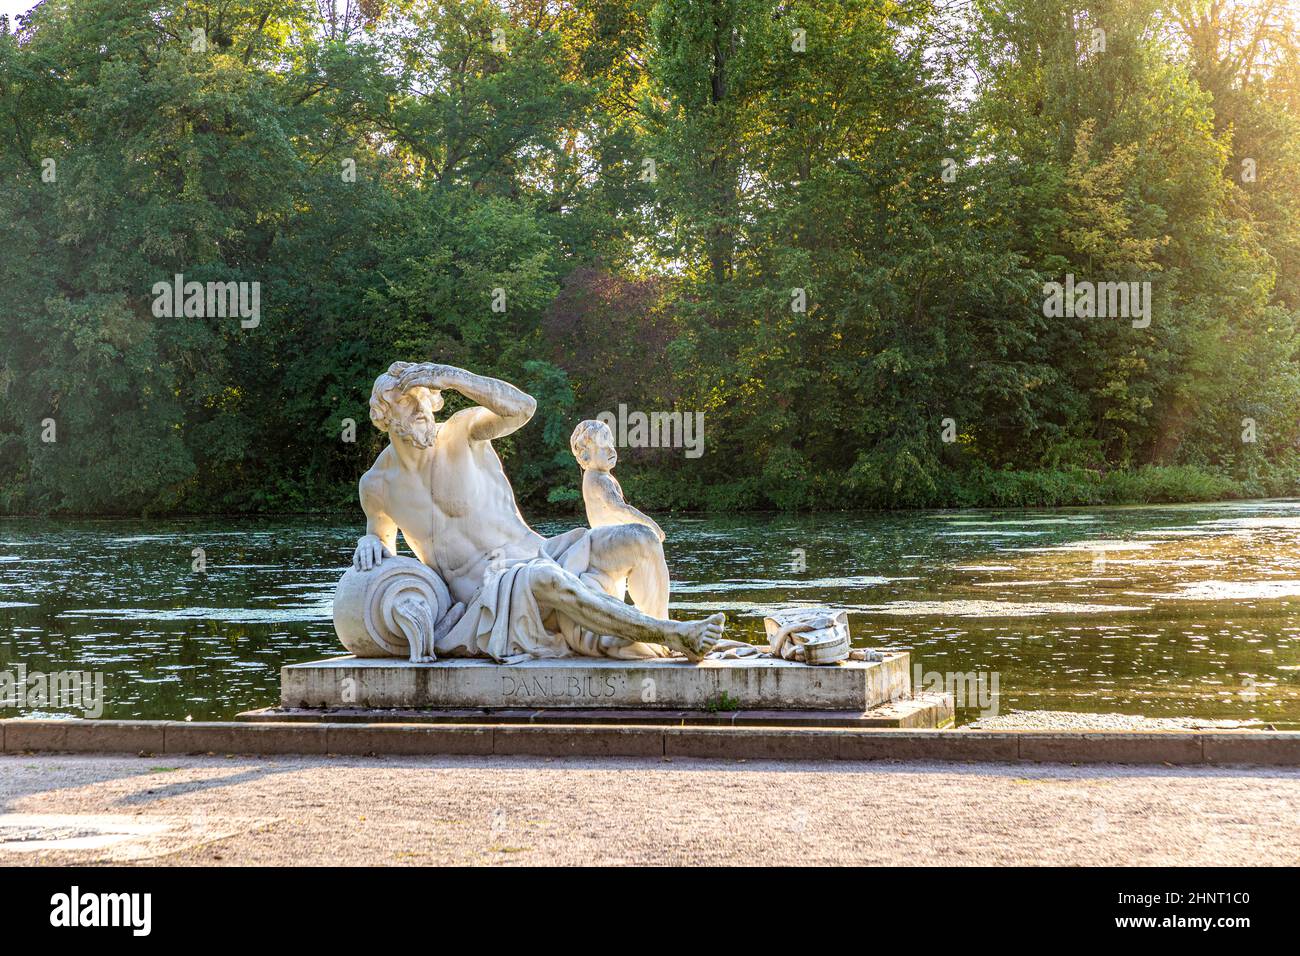 Il famoso fiume god Rhenus si trova nello splendido parco di Schwetzingen, nel castello reale e nei giardini, nelle vicinanze della città di Heidelberg, in Germania Foto Stock